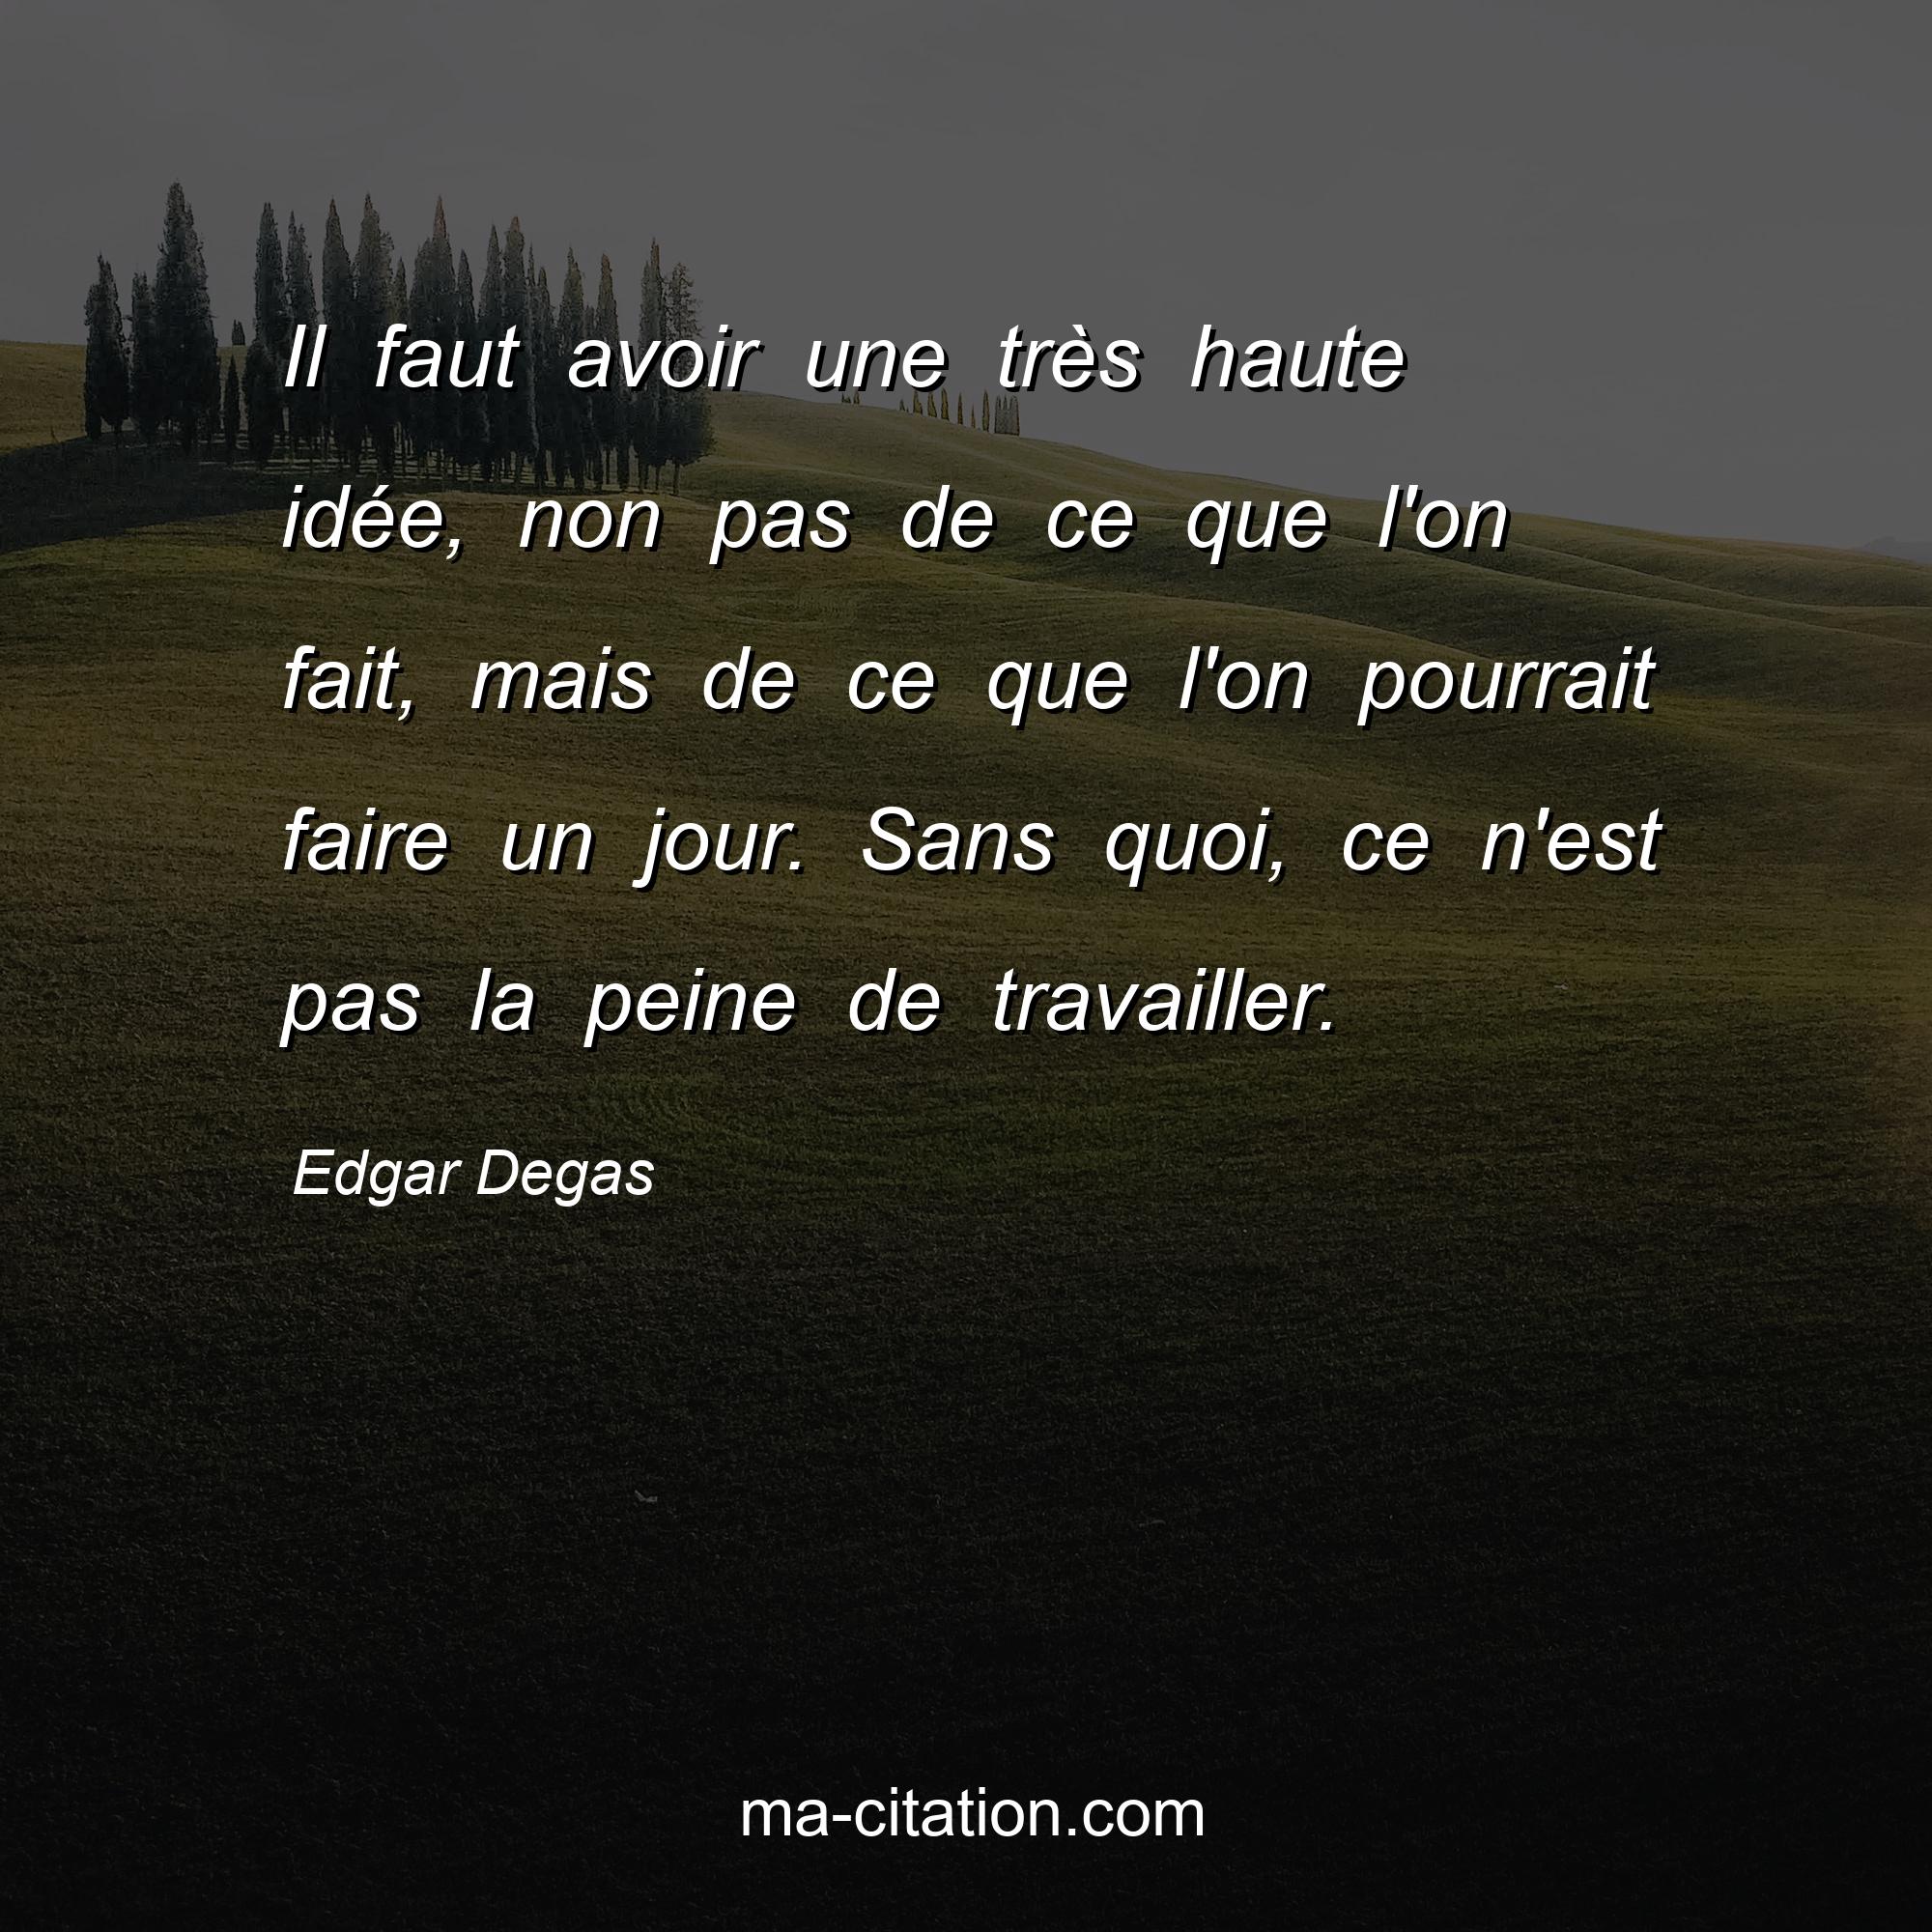 Edgar Degas : Il faut avoir une très haute idée, non pas de ce que l'on fait, mais de ce que l'on pourrait faire un jour. Sans quoi, ce n'est pas la peine de travailler.